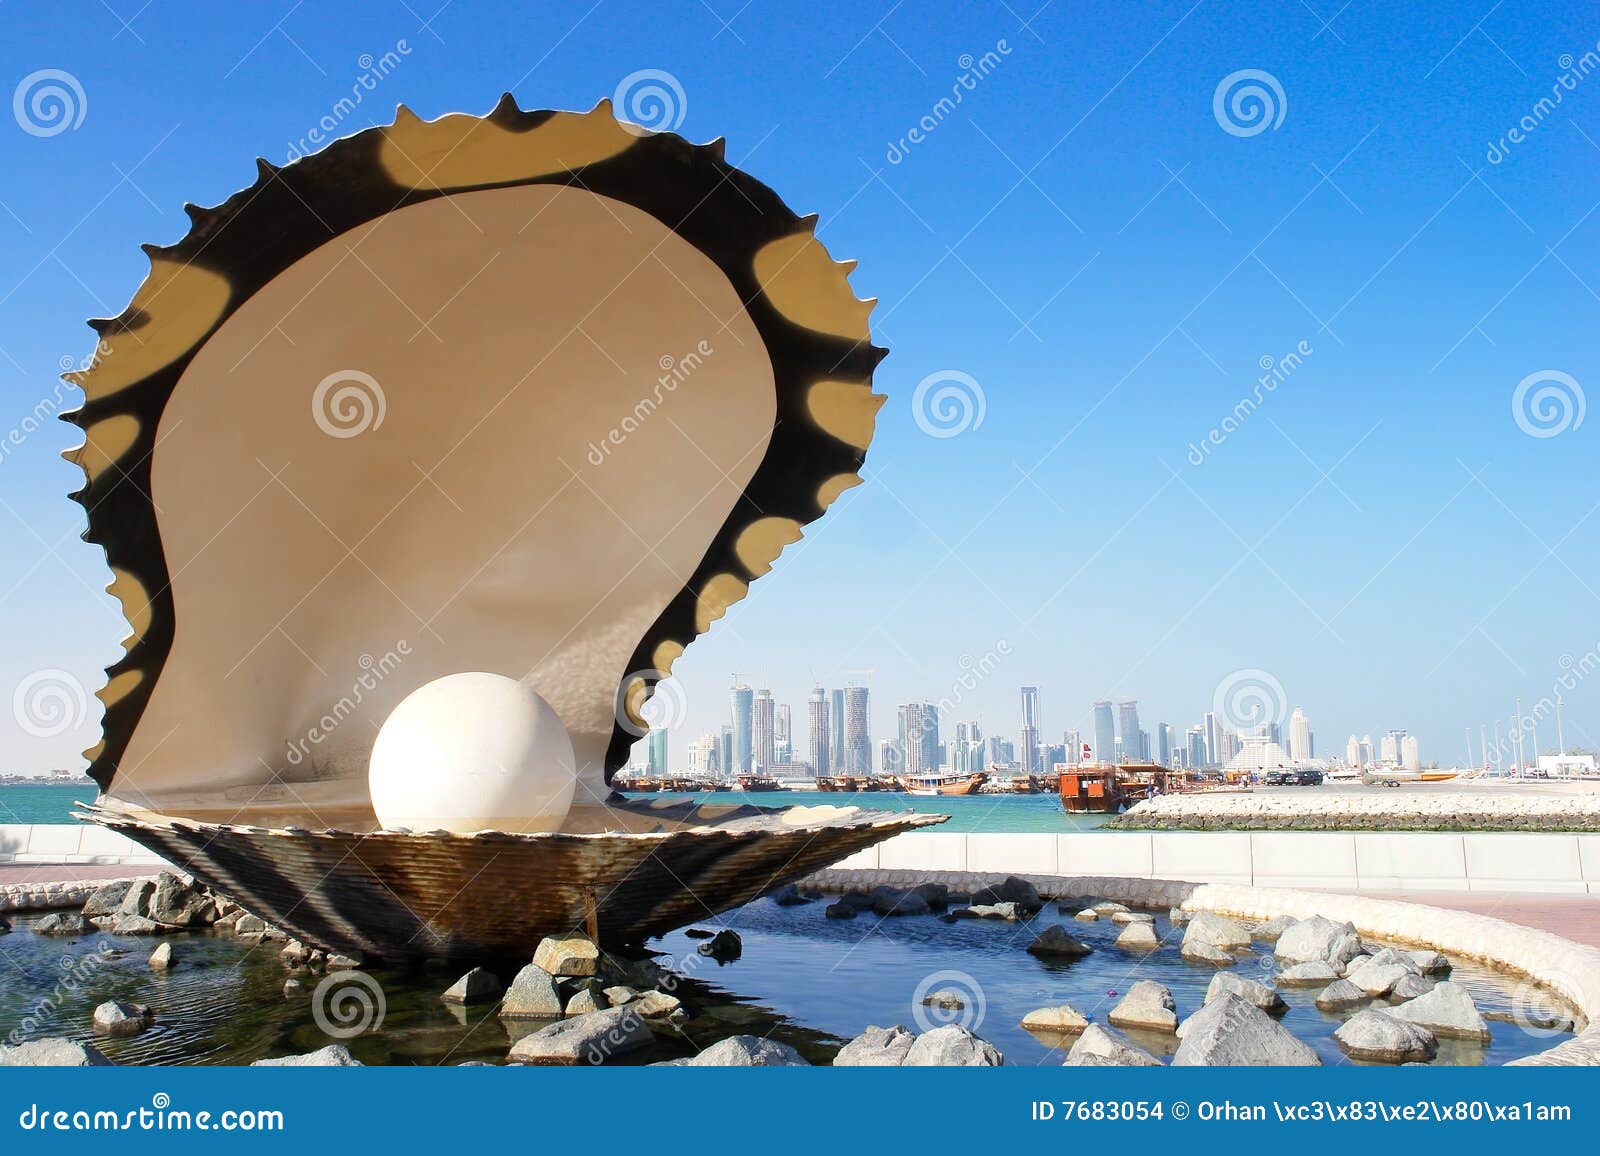 pearl and oyster fountain in corniche - doha qatar